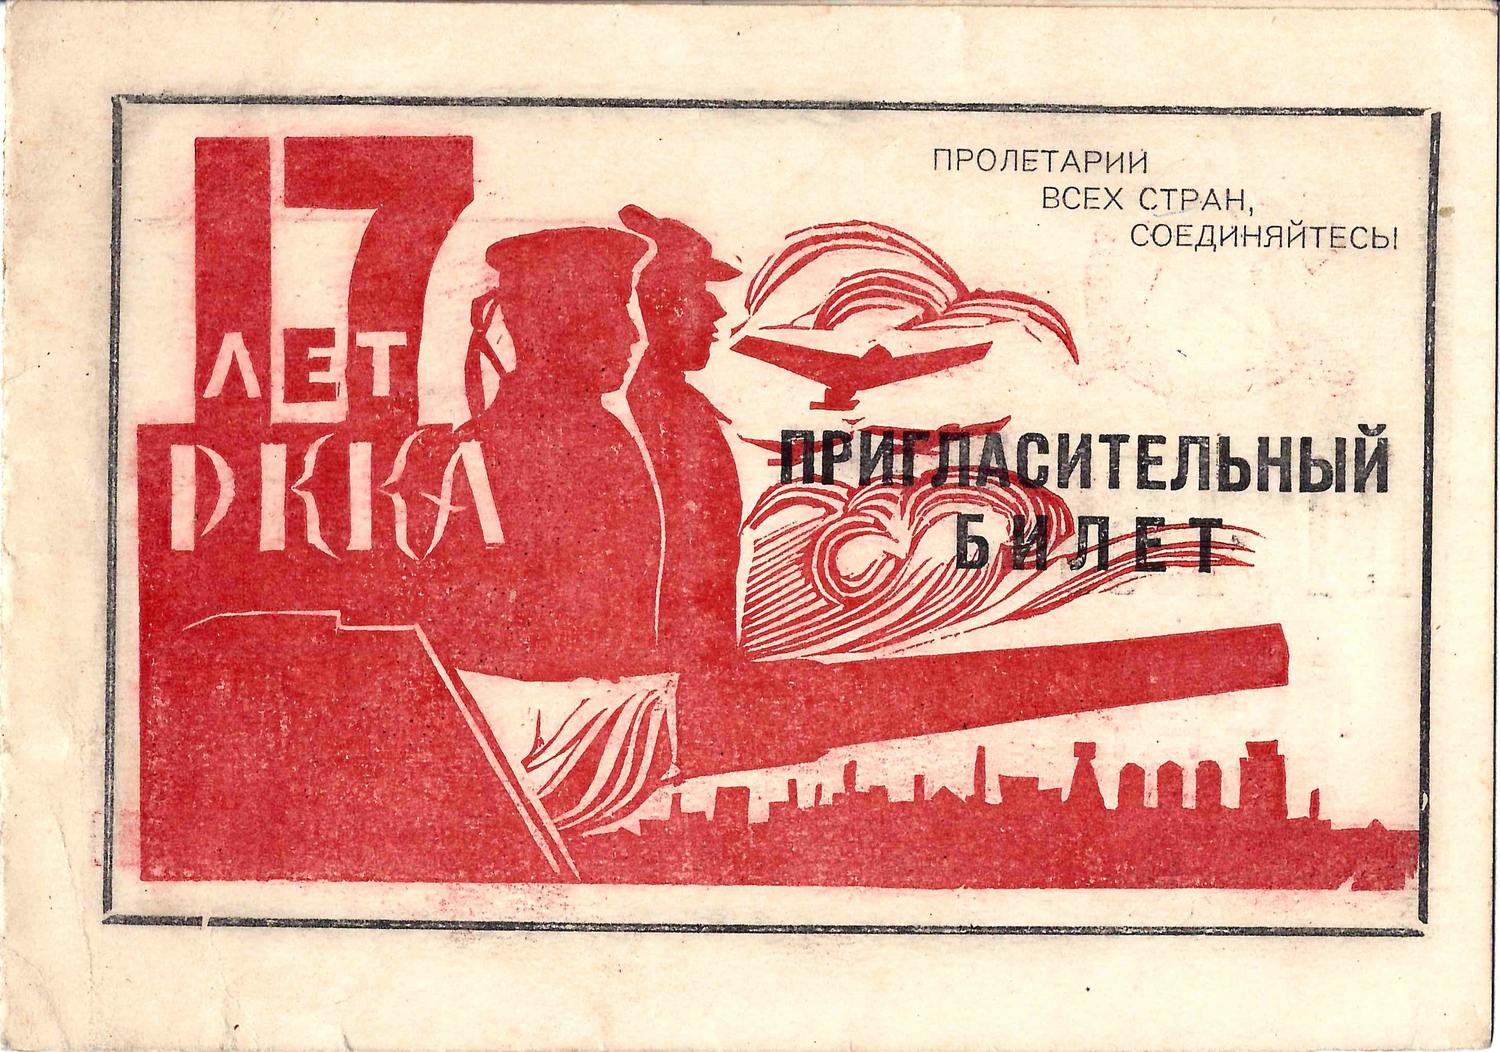 Пригласительный билет политического управления Кронштадтской базы флота и Кронштадтского Райкома ВКП(б) на торжественное заседание, посвящённое семнадцатой годовщине РККА 22 февраля 1935 года.